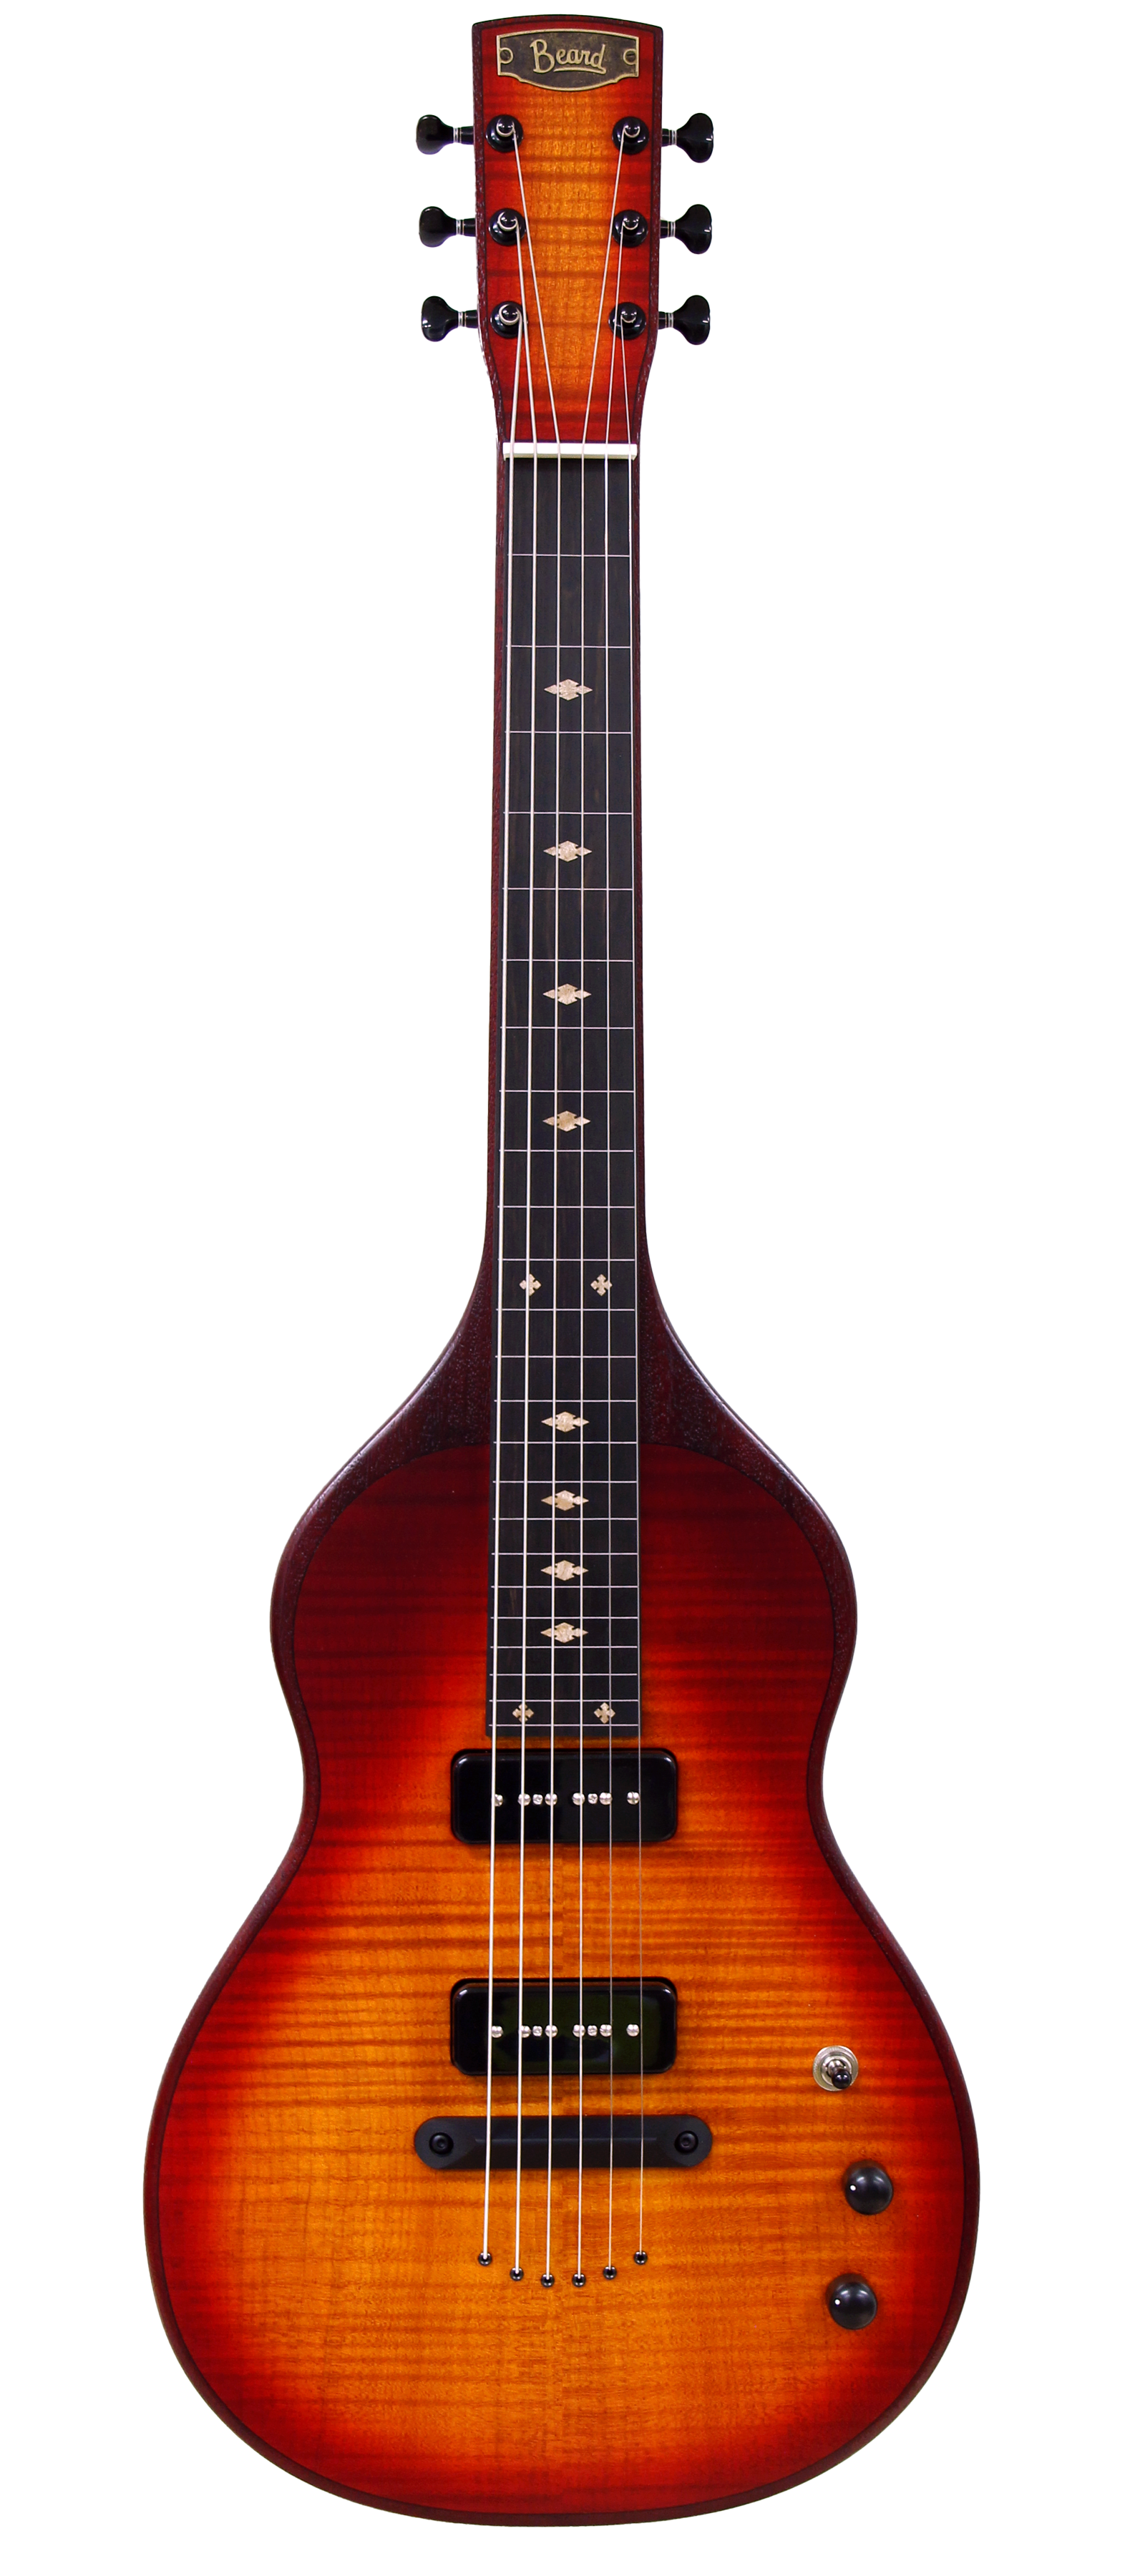 Lapsteel guitar - Beard Trailhead model